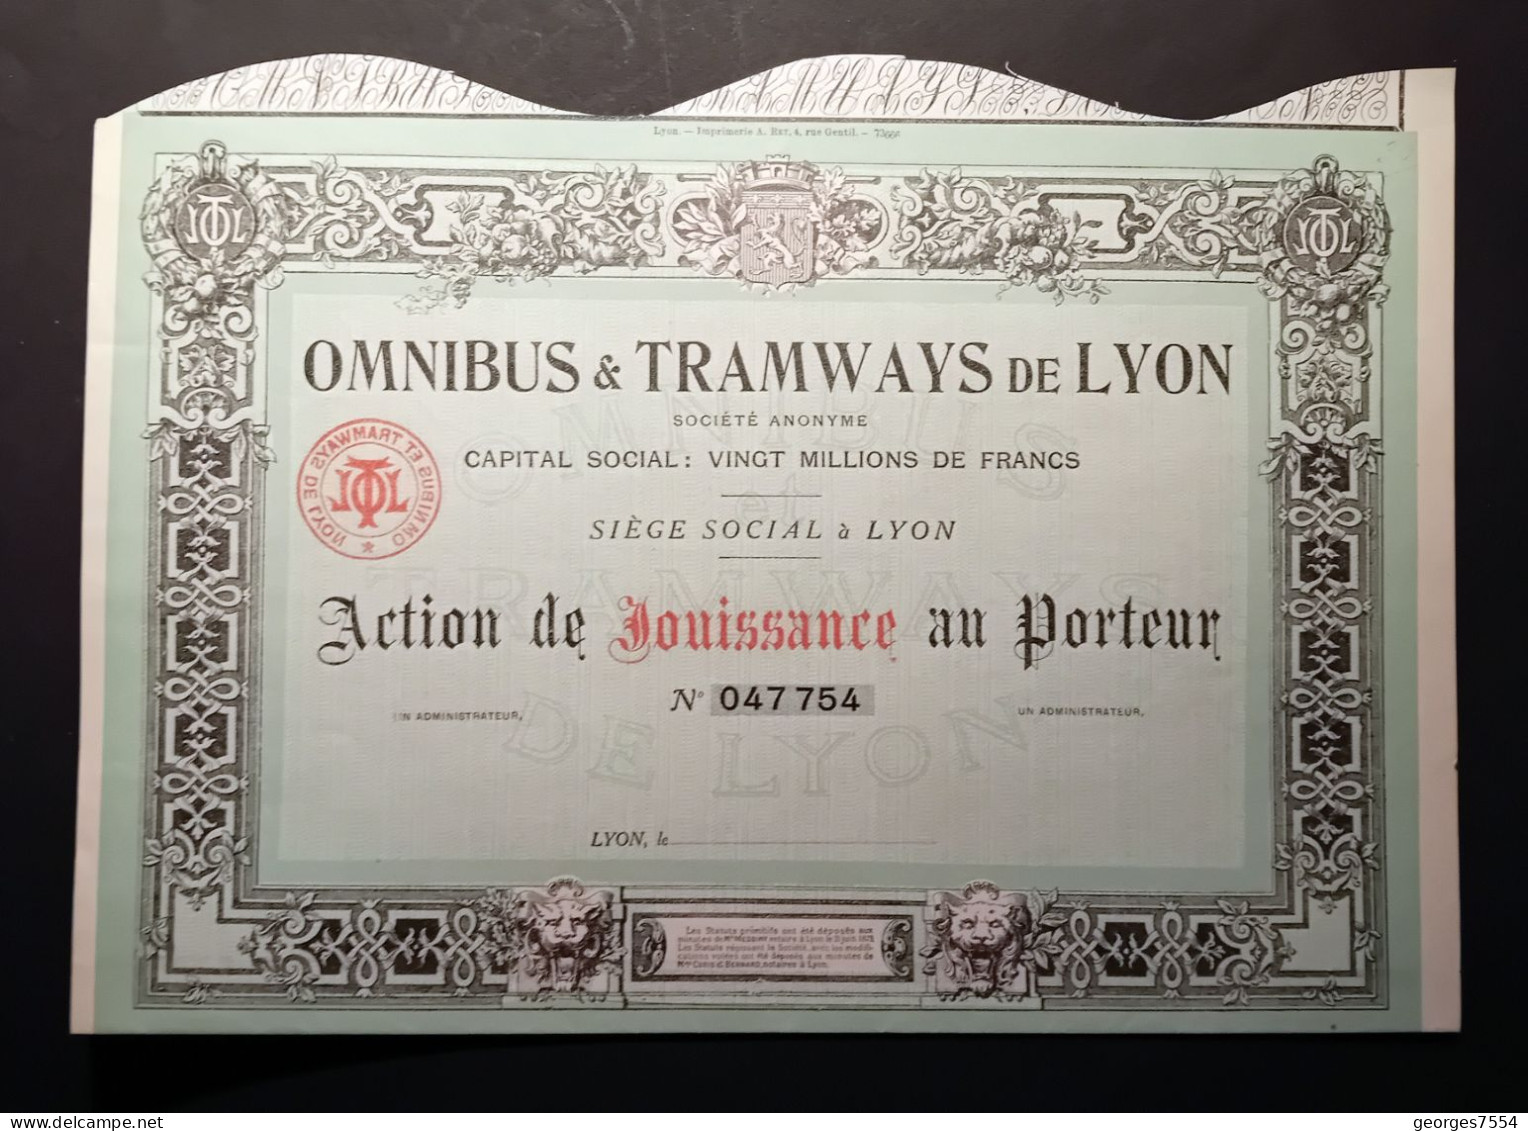 OMNIBUS & TRAMWAYS DE LYON  - ACTION DE JOUISSANCE AU PORTEUR - Verkehr & Transport